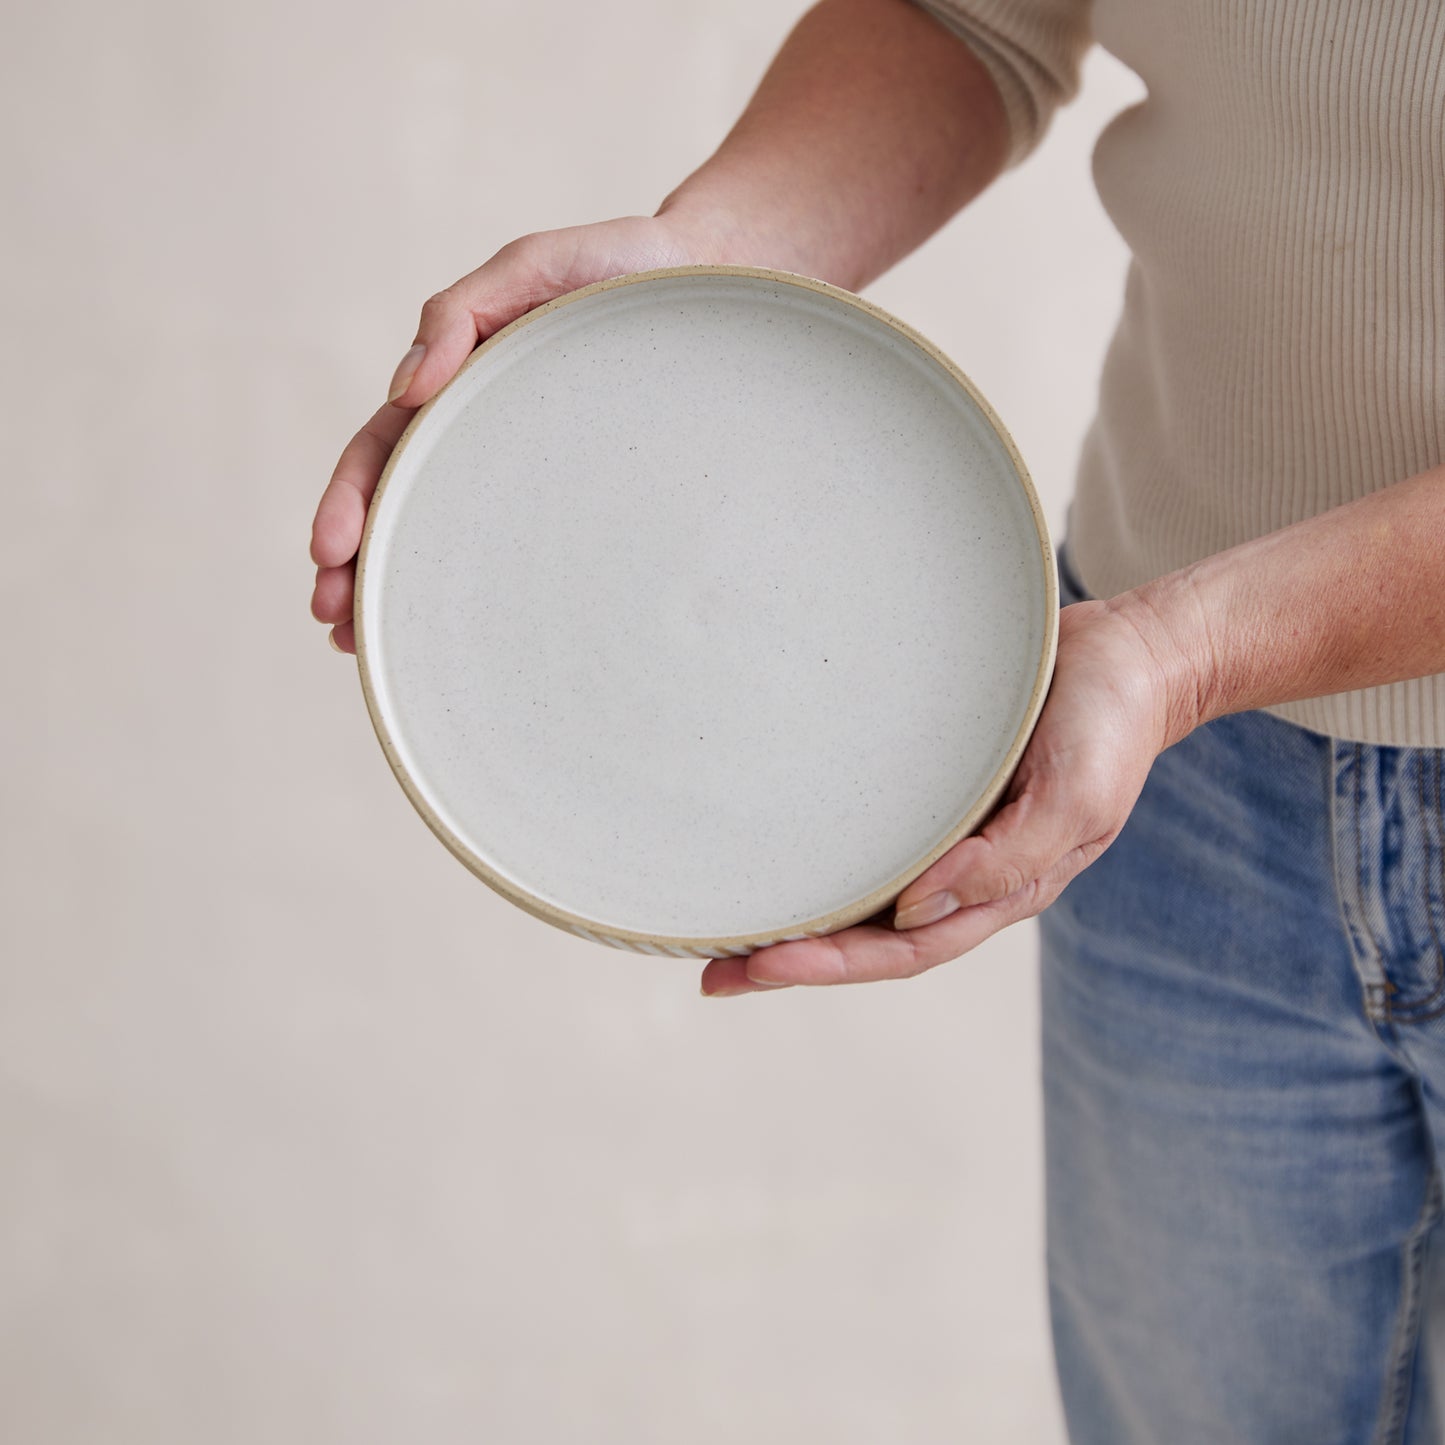 Geometric Handmade Ceramic Platter - Small - Natural and White